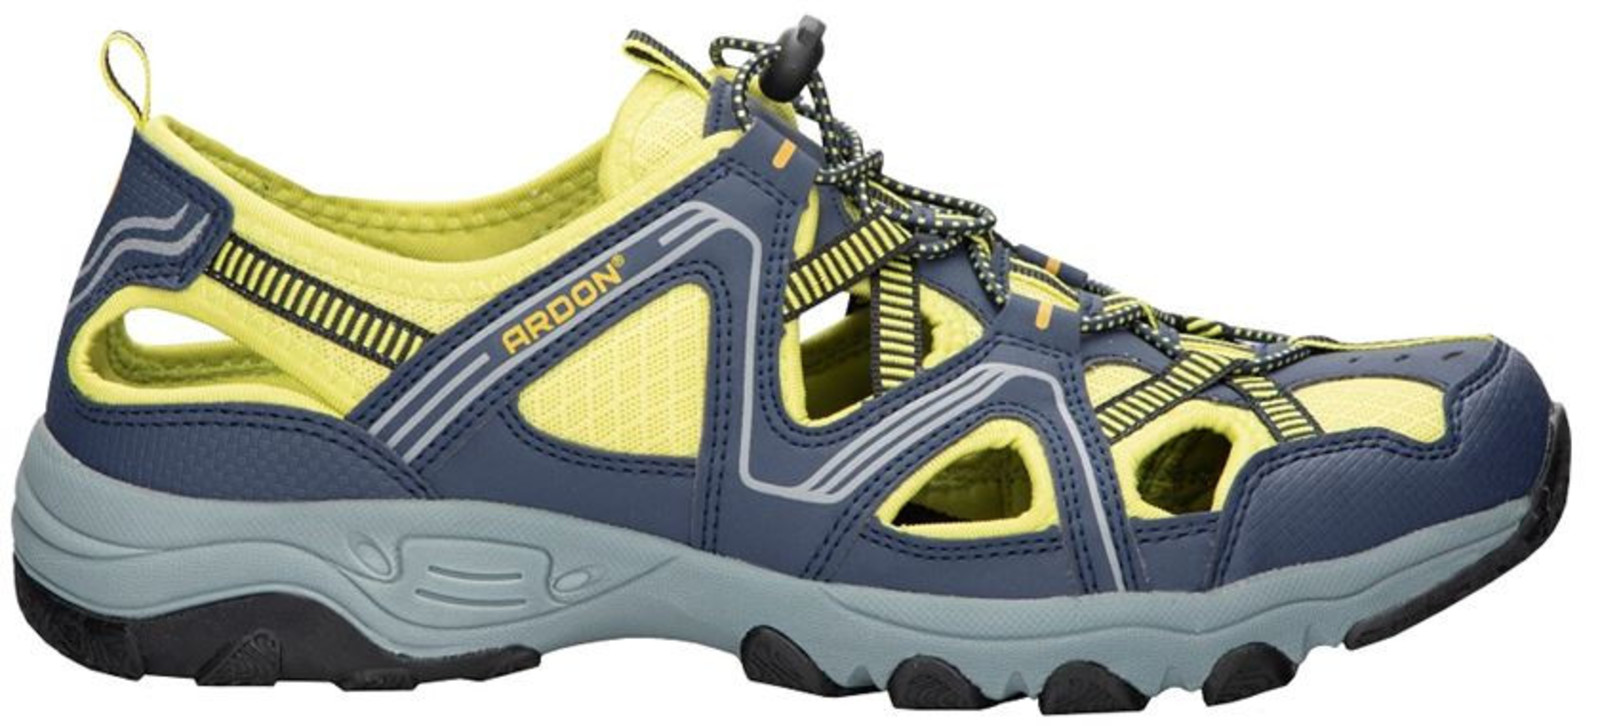 Trekové sandále Ardon Strand - veľkosť: 46, farba: modrá/žltá